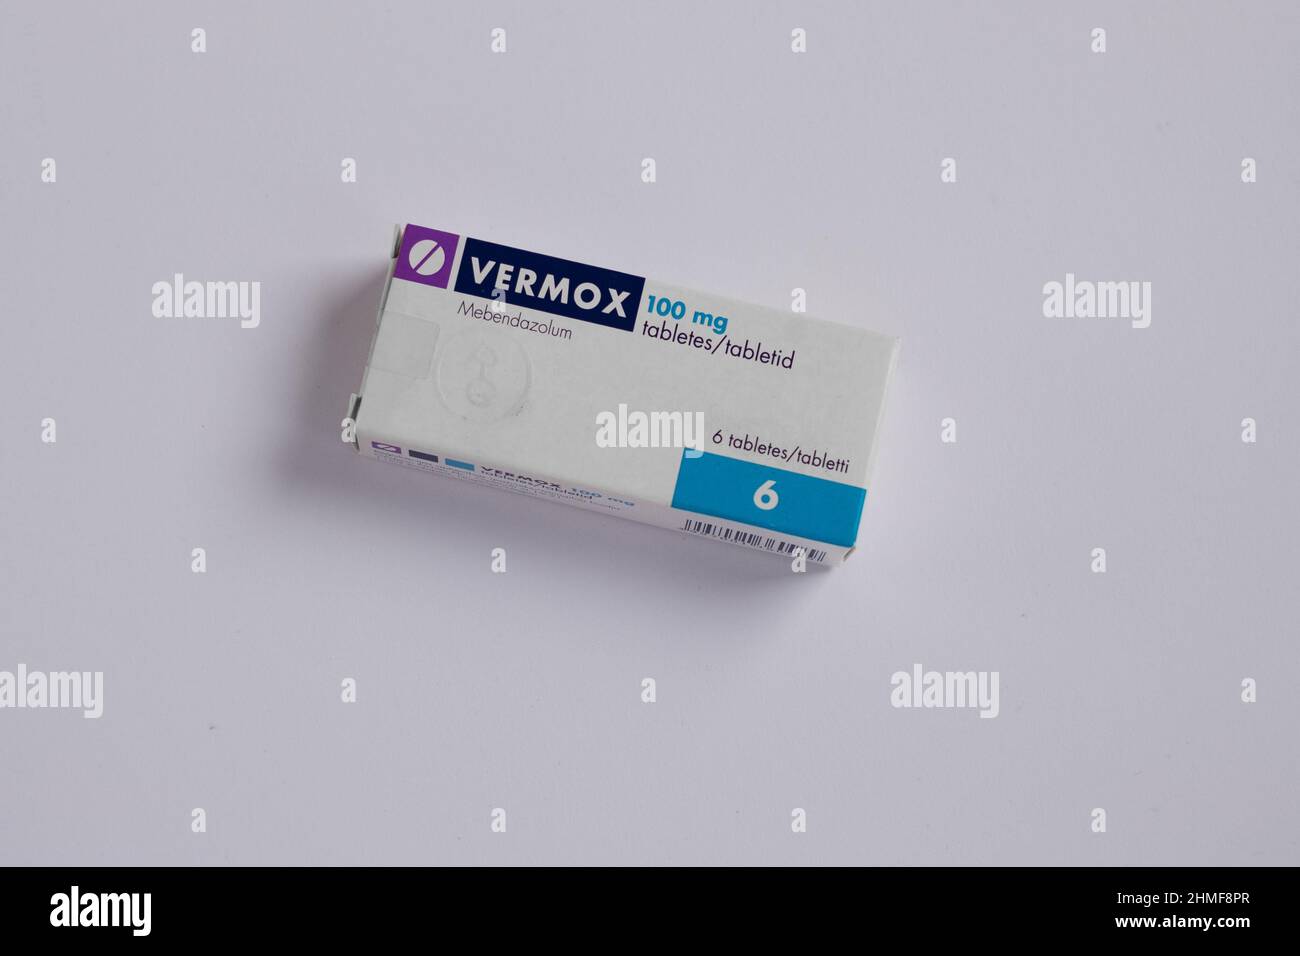 Tallinn, Estonia - 02.08.2022: Vermox mebendazole compresse di Janssen Pharmaceutica per il trattamento delle infezioni da verme. Foto Stock